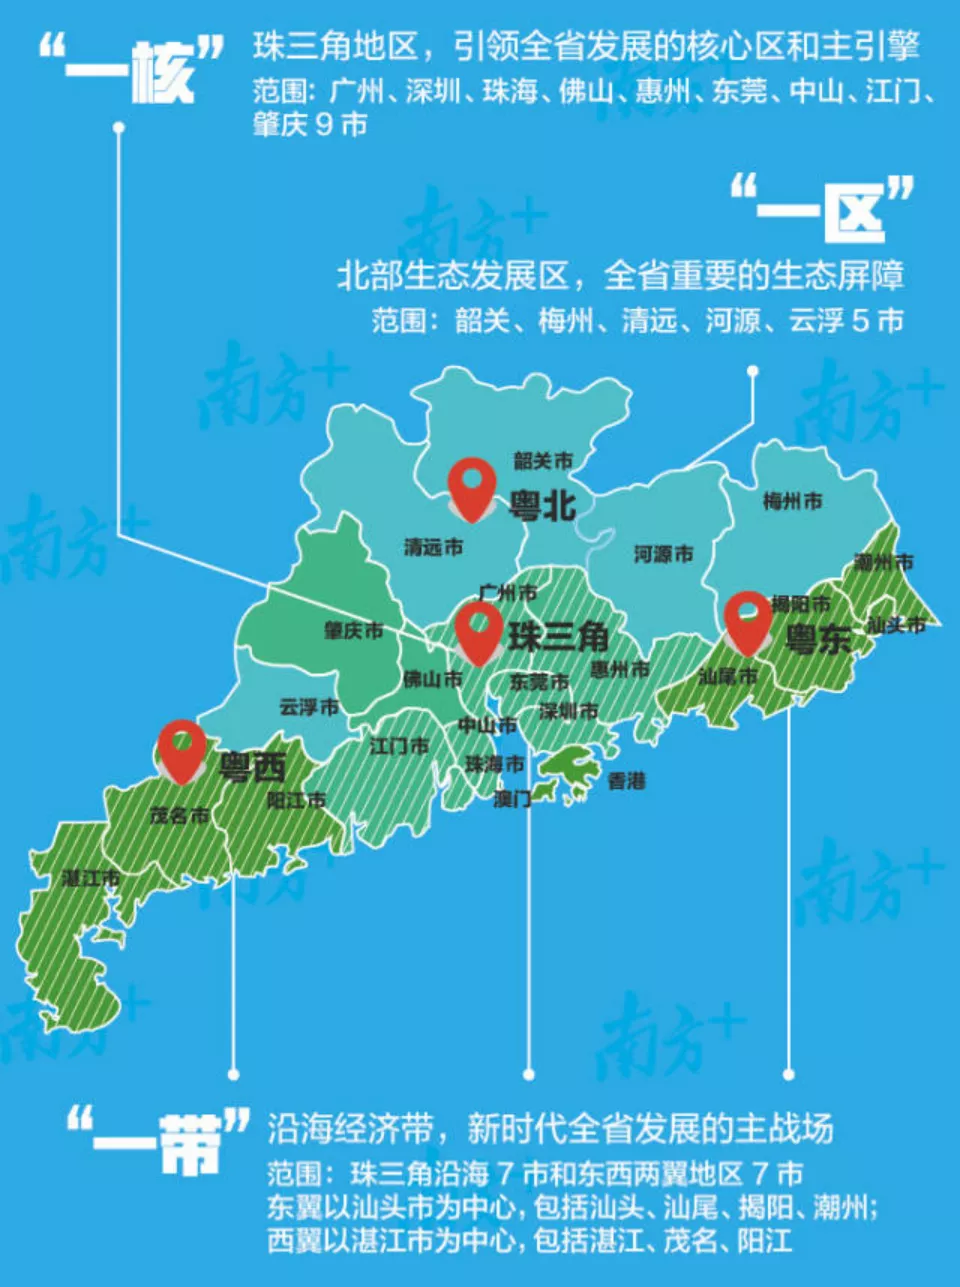 显然,粤北地区的发展,离不开广州的强大.